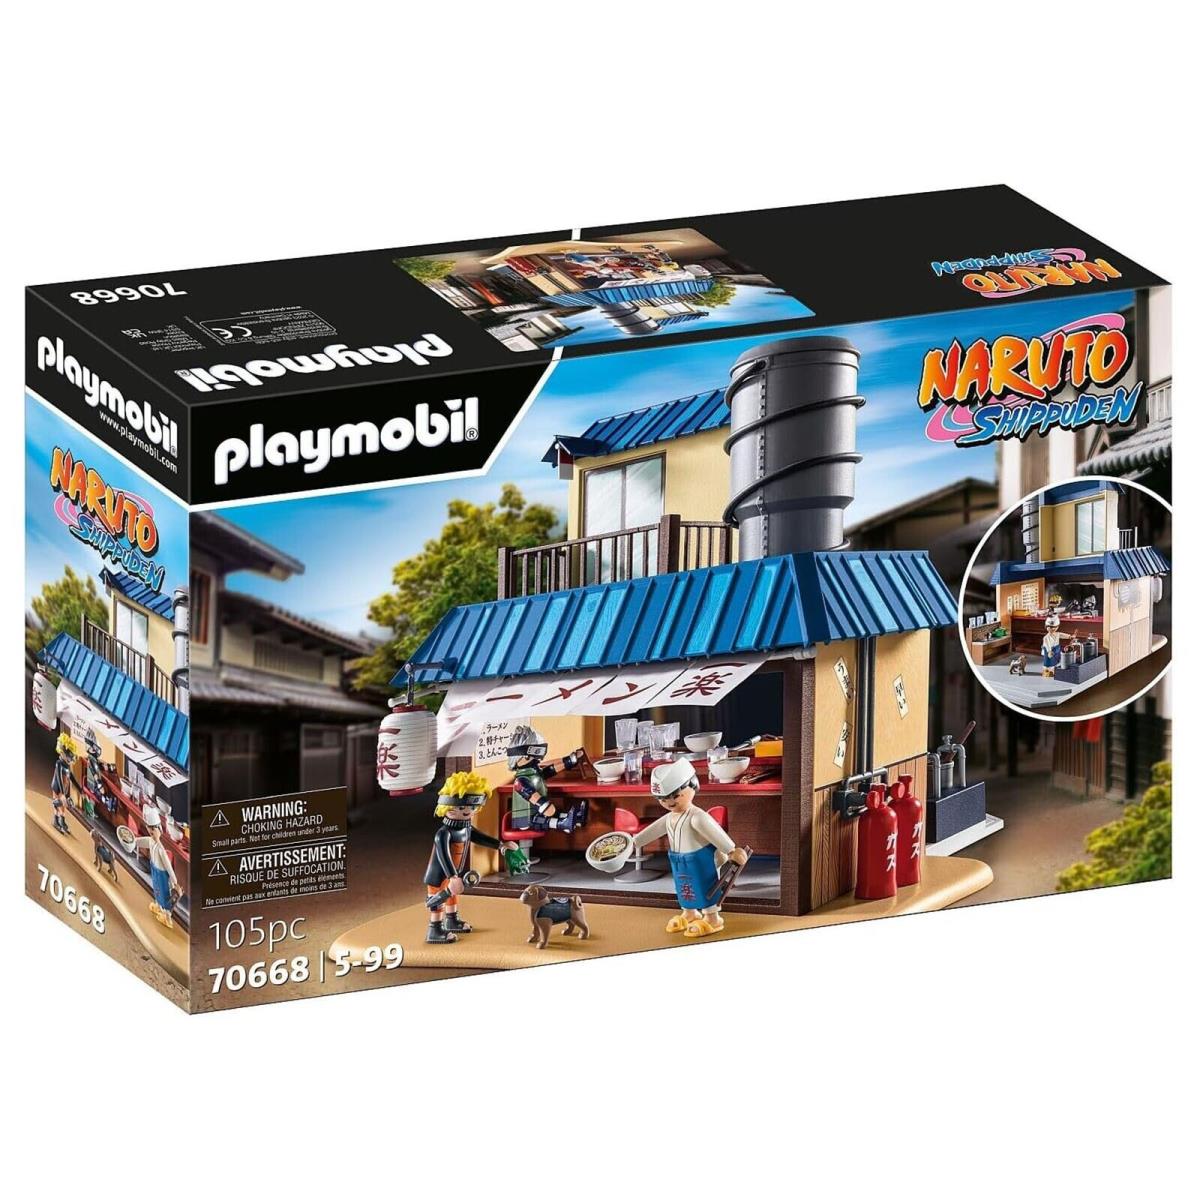 Playmobil Naruto Shippuden Ichiraku Ramenshop Building Set 70668 IN Stock